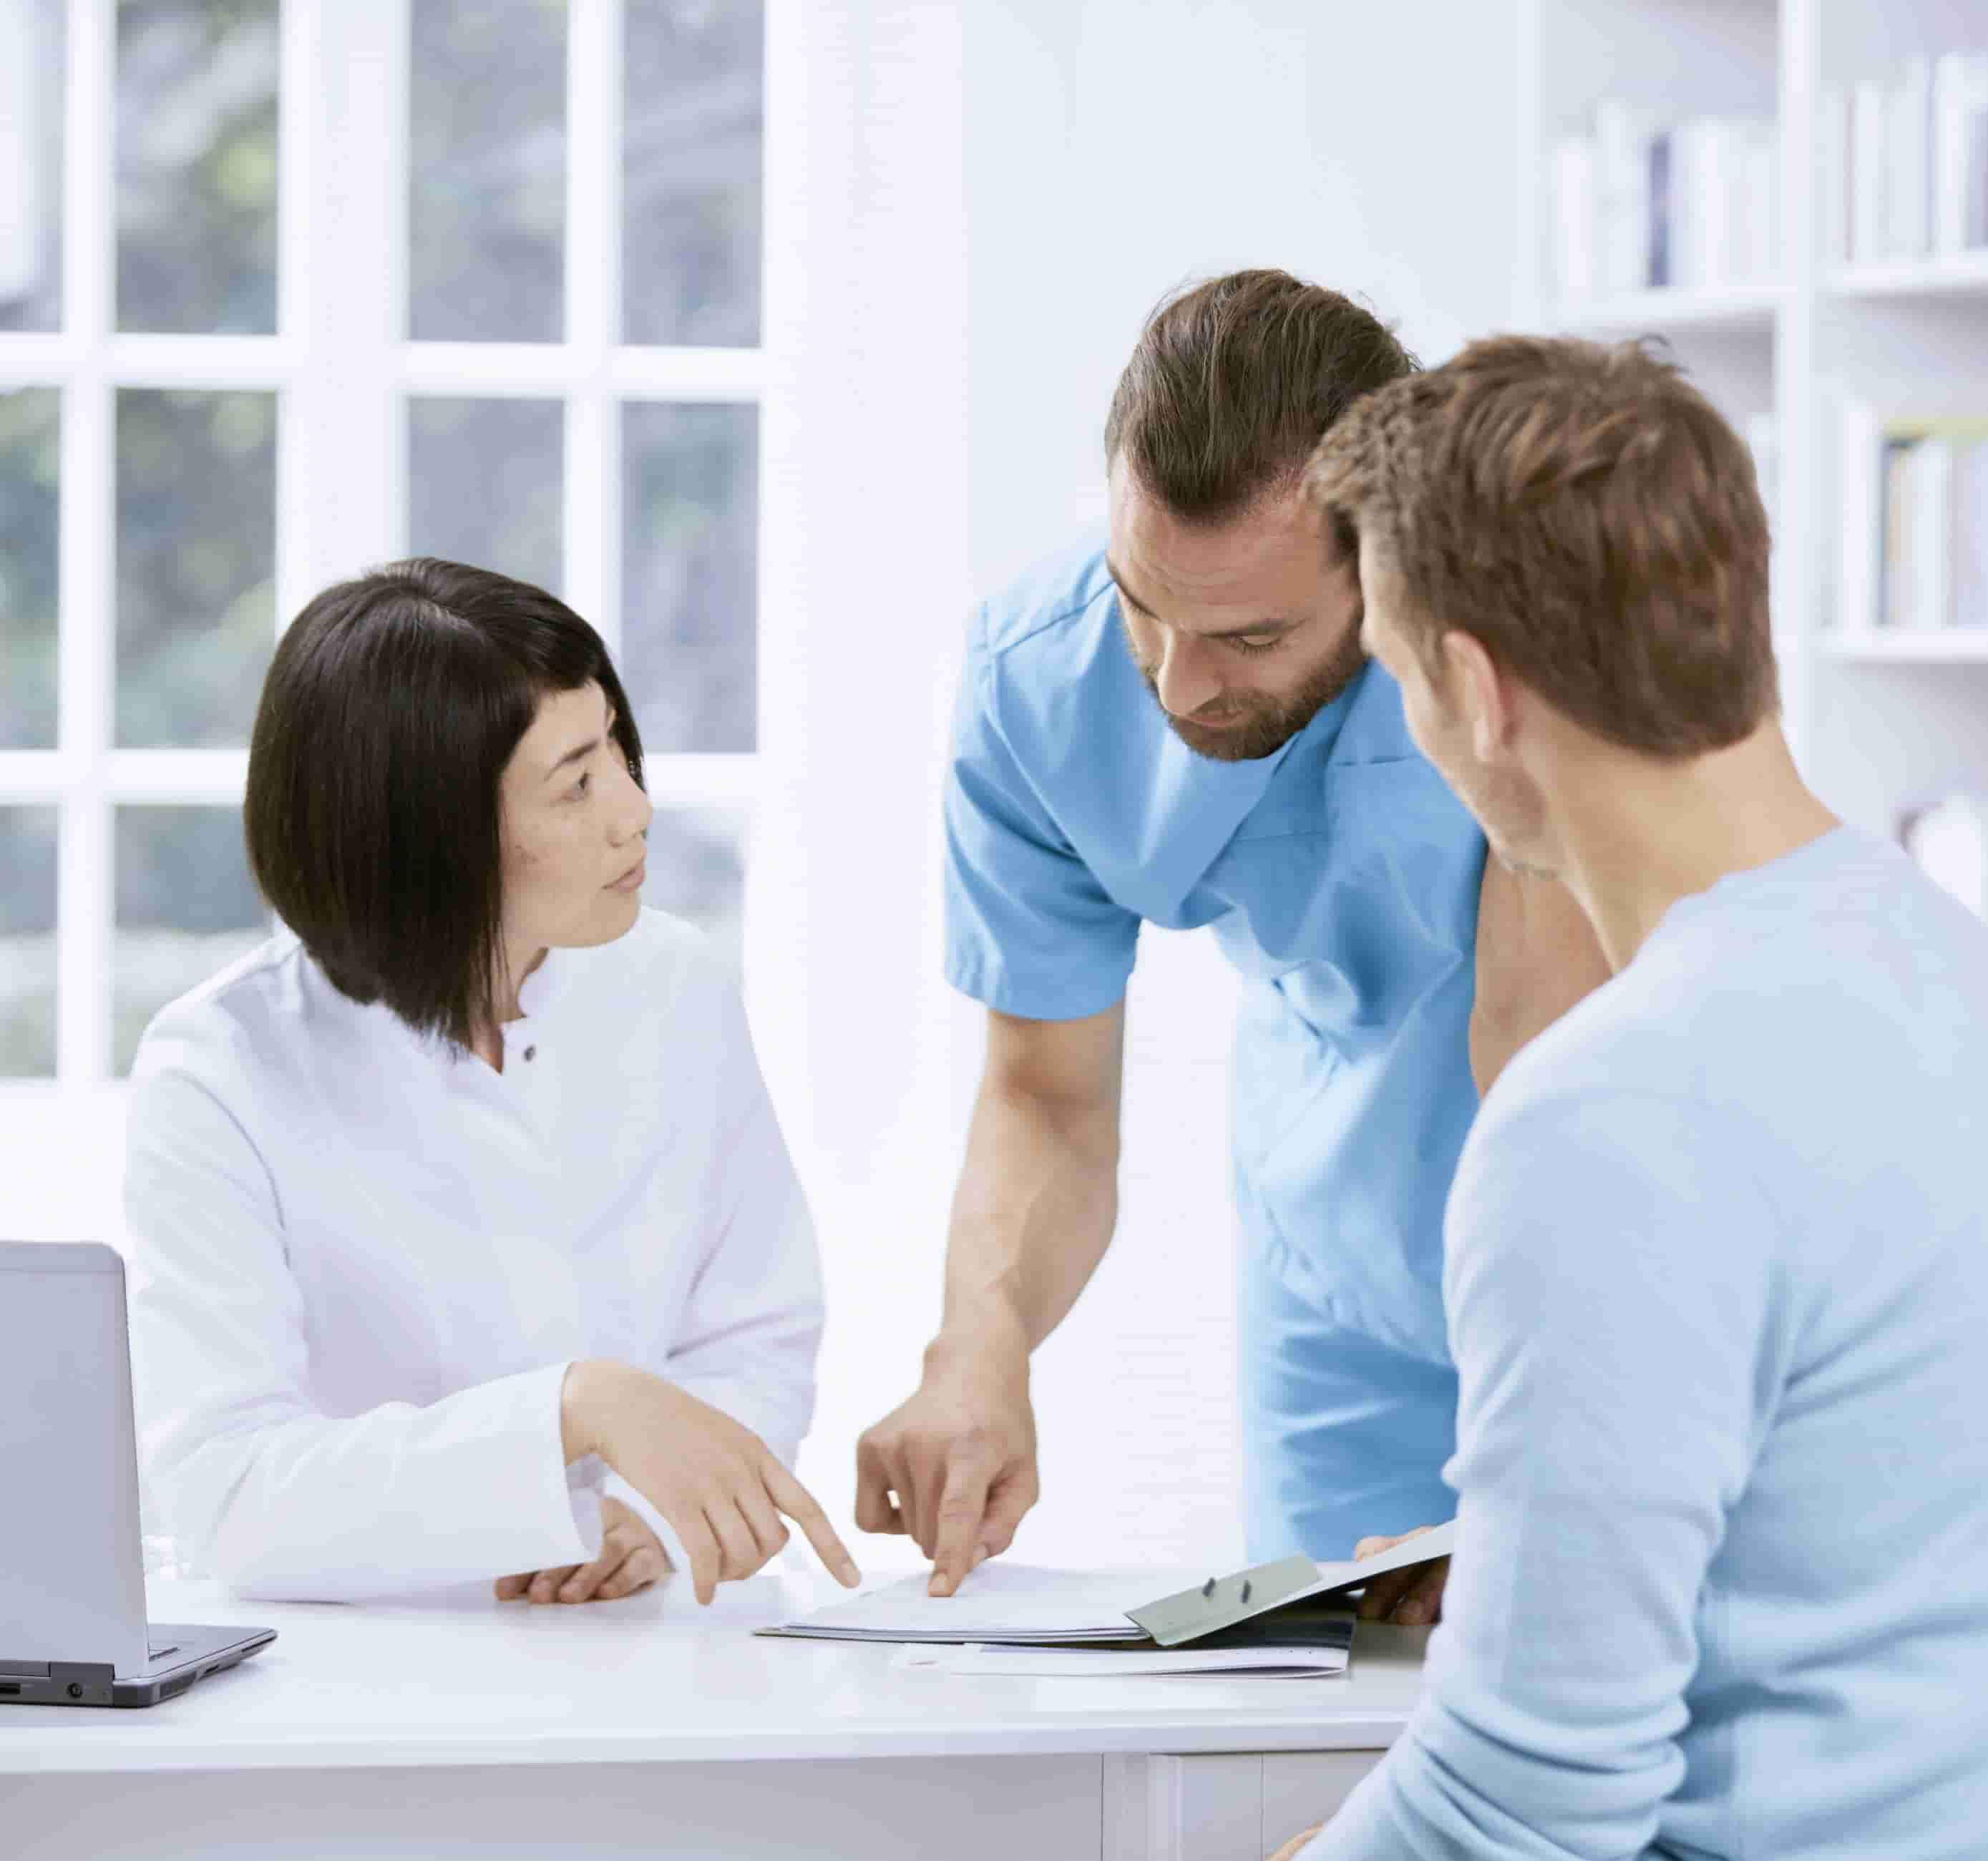 Foto de dois profissionais de saúde, um homem branco e uma mulher asiática, em ambiente hospitalar, de frente para um homem branco sentado, analisando um documento sobre a mesa